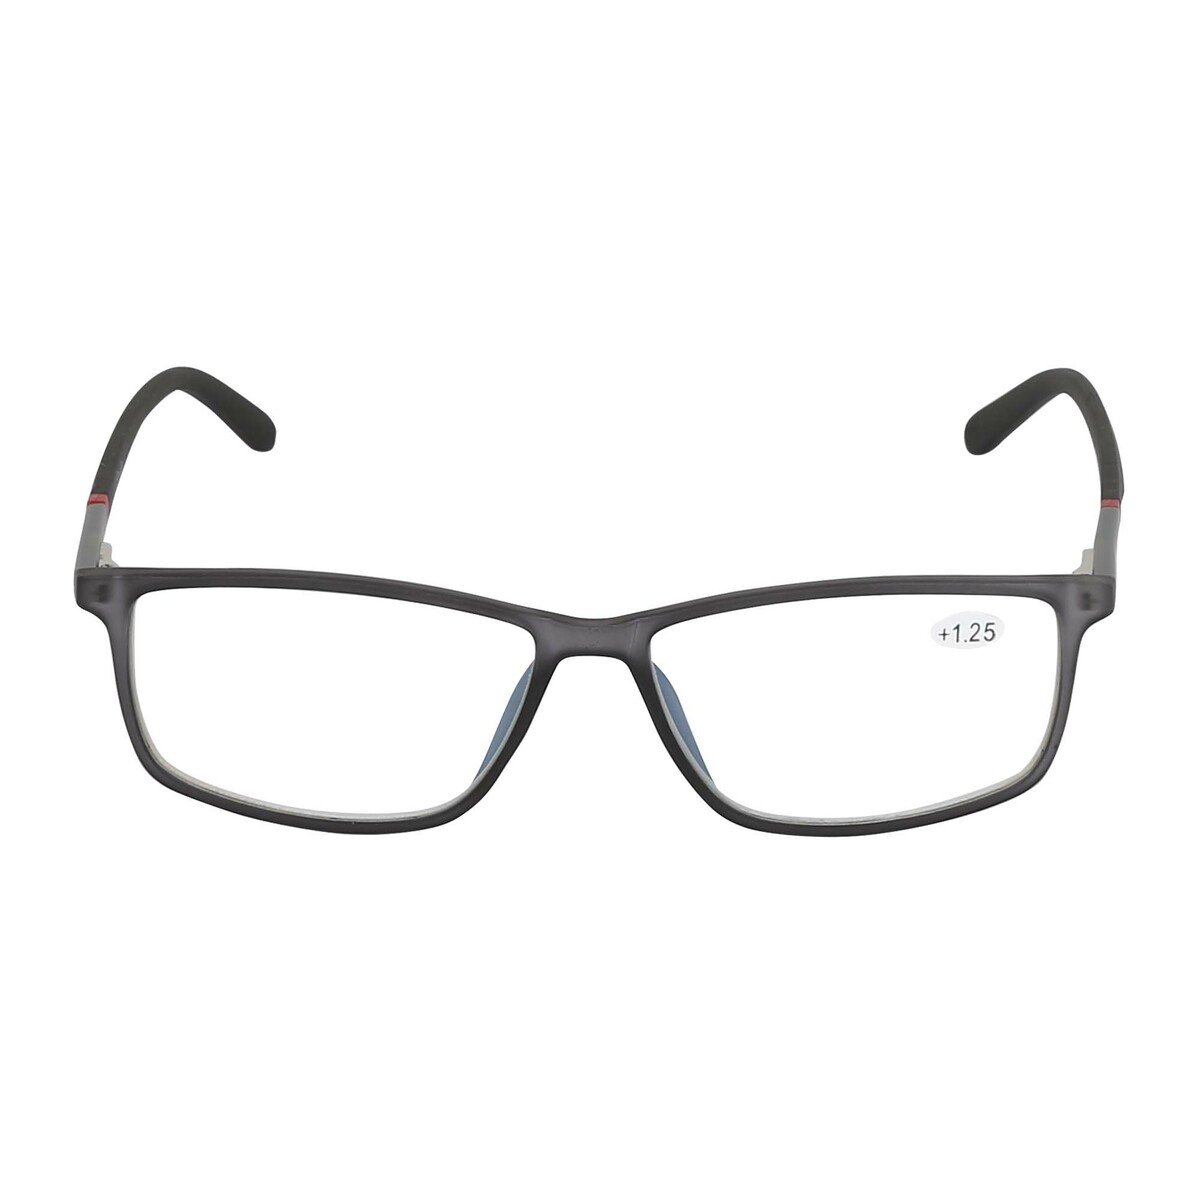 Stanlio Unisex Reading Glasses +1.25